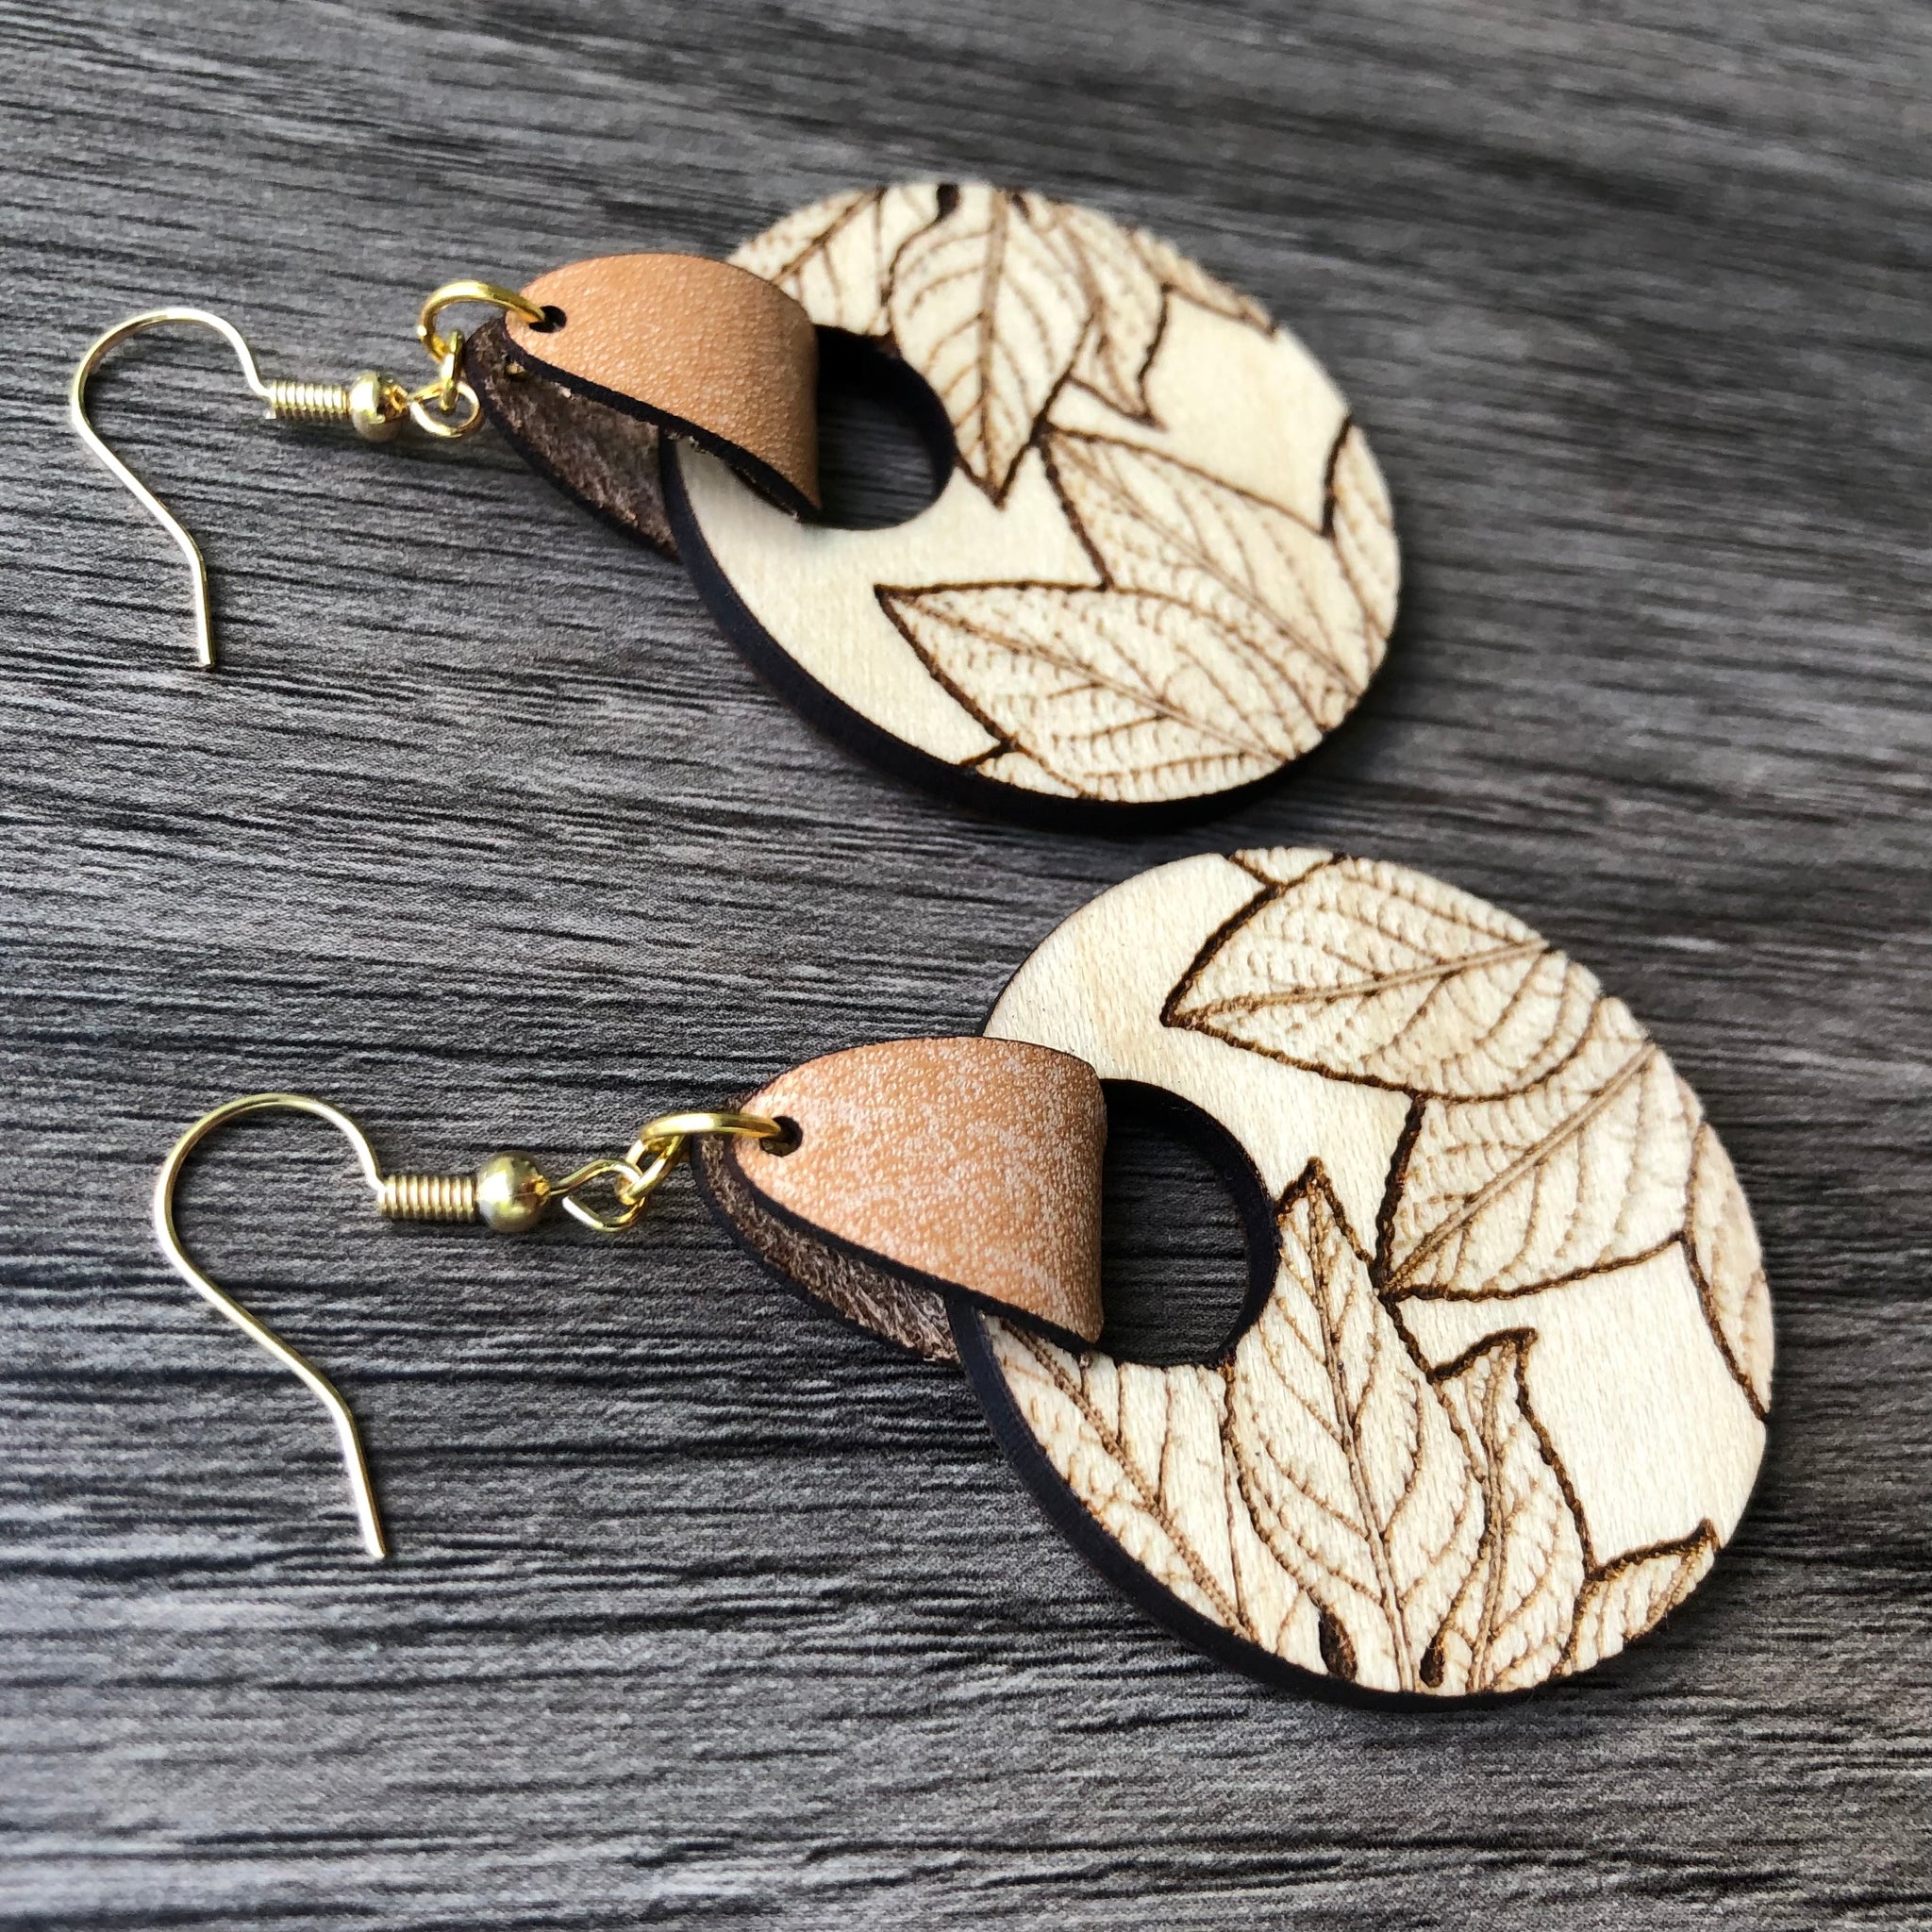 Handmade Australian leather leaf earrings - Gold, cream, olive [LMT-210] |  KI & Co. Australia - Australian made leather earrings, Australian greeting  cards, Art prints